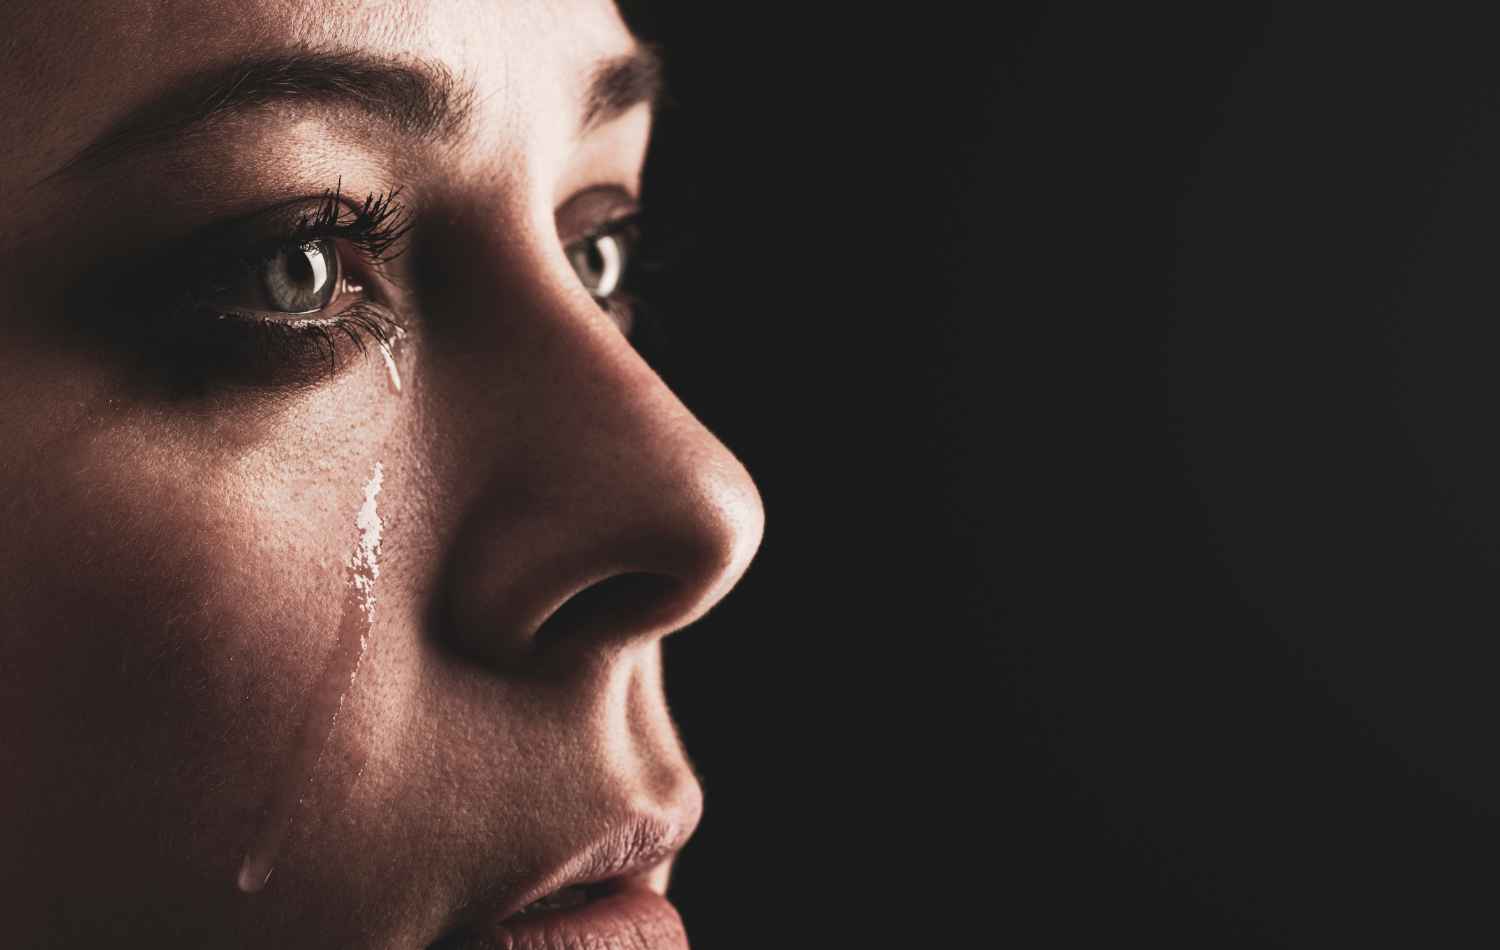 כוחה המרפא של הדמעות: התמודדות עם התקפי חרדה באמצעות טיפול בבכי